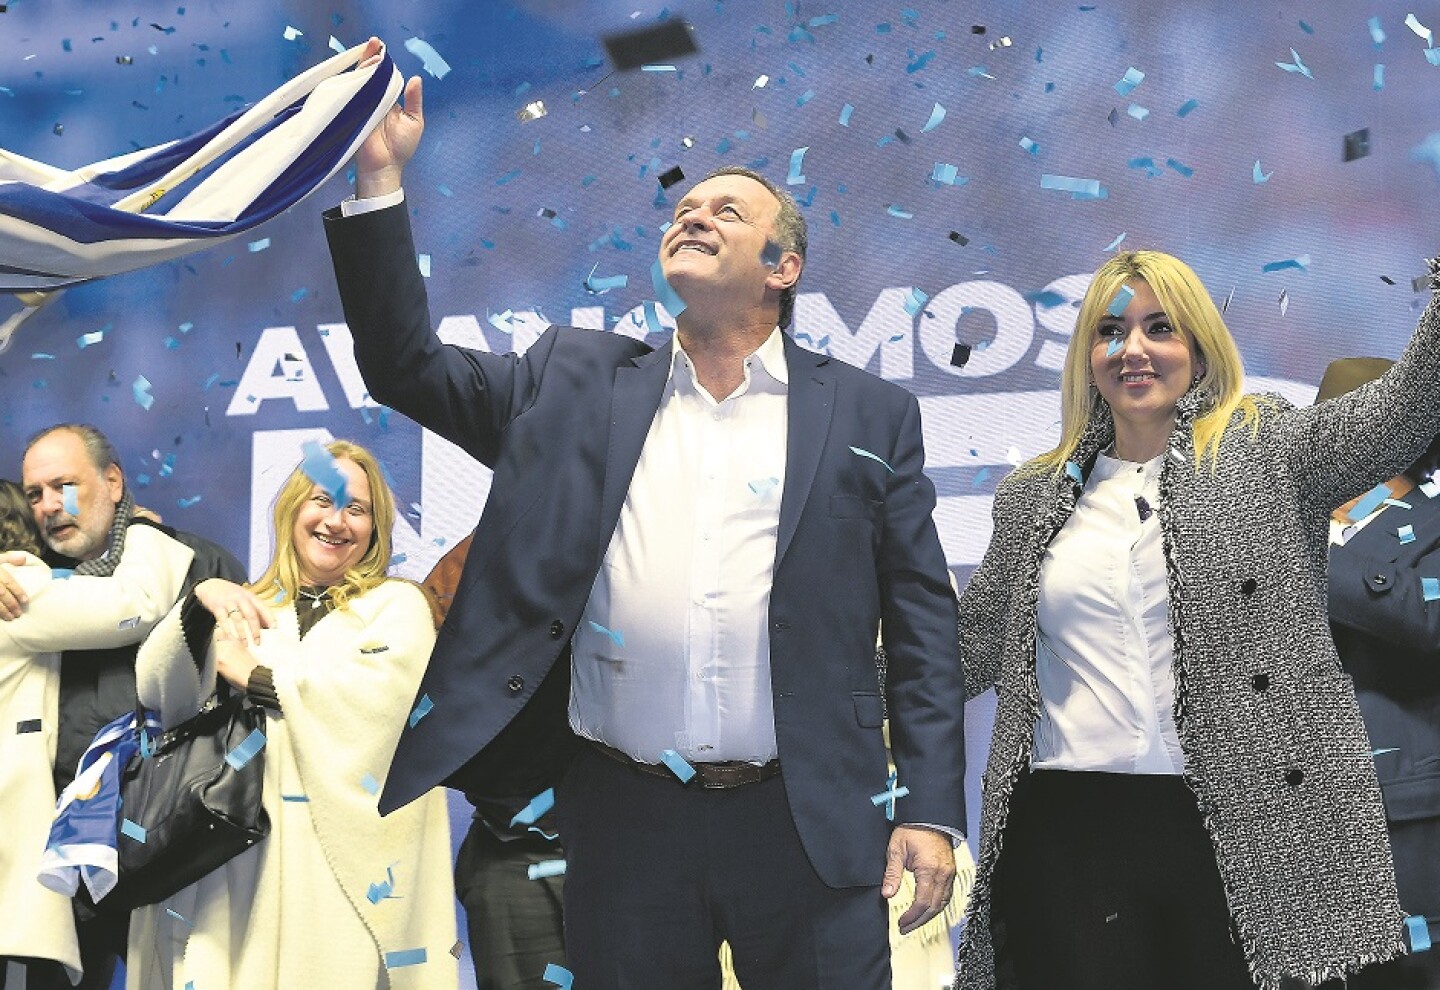  Delgado sorprendió anoche al anunciar a Valeria Ripoll como compañera de fórmula. Ripoll, exdirigente de Adeom, se unió el año pasado al Partido Nacional.